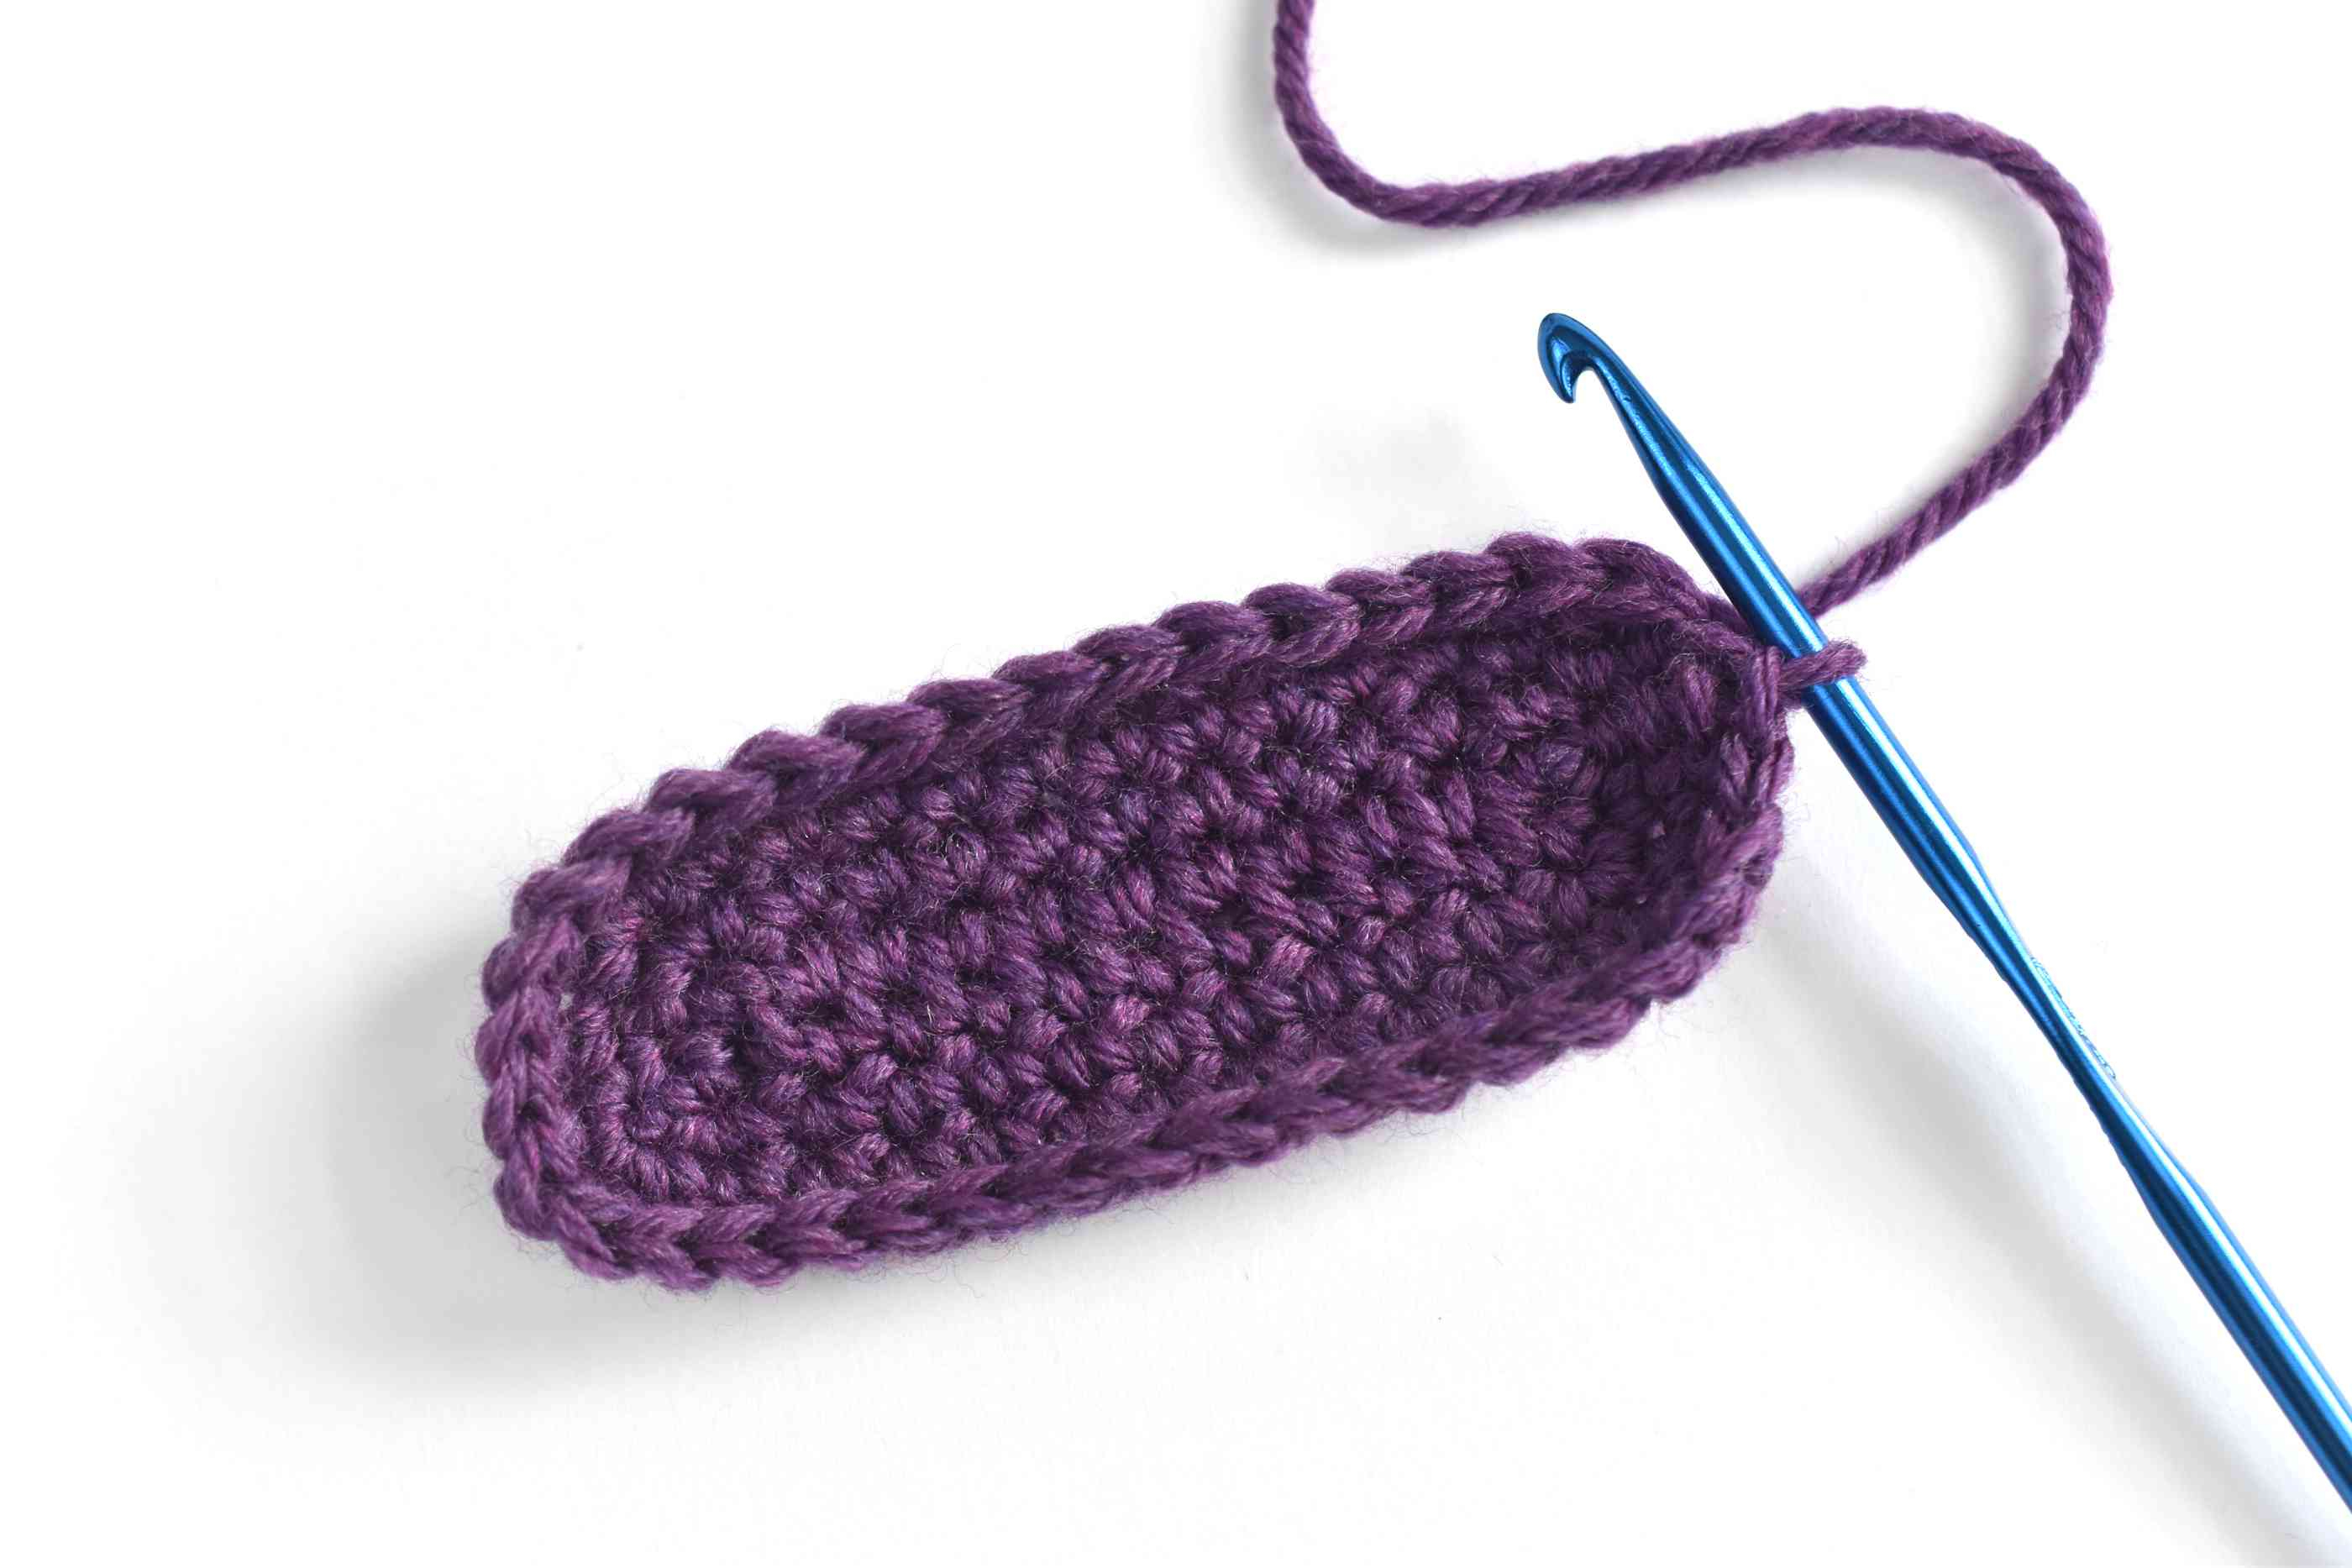 Crochet Slippers Pattern Free Simple Crochet Slippers Free Pattern